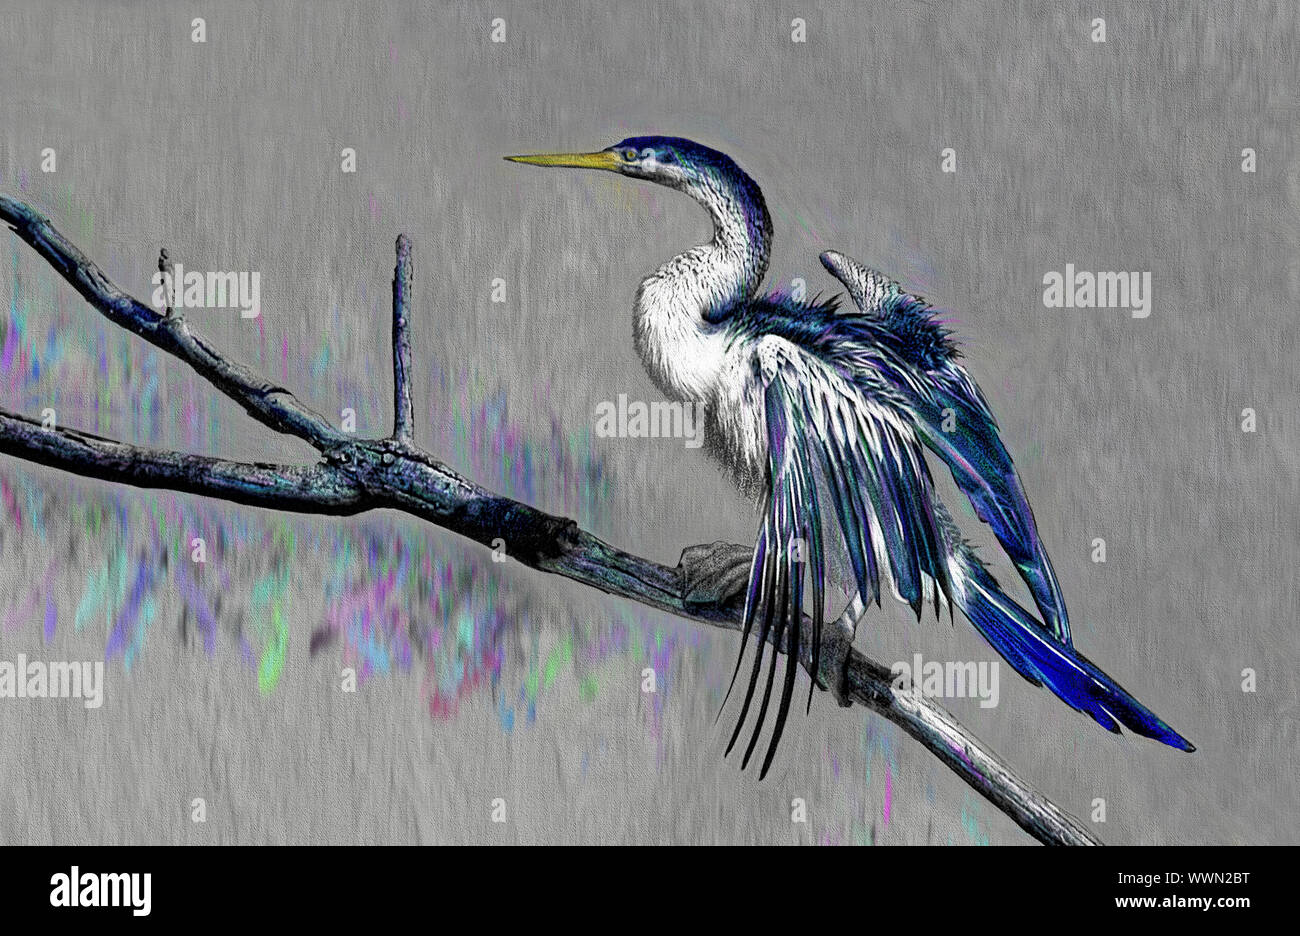 Una imagen fotográfica de un gran pájaro en la rama de un árbol que ha sido mejorada y colores para producir un estudio artístico sobre un fondo gris Foto de stock